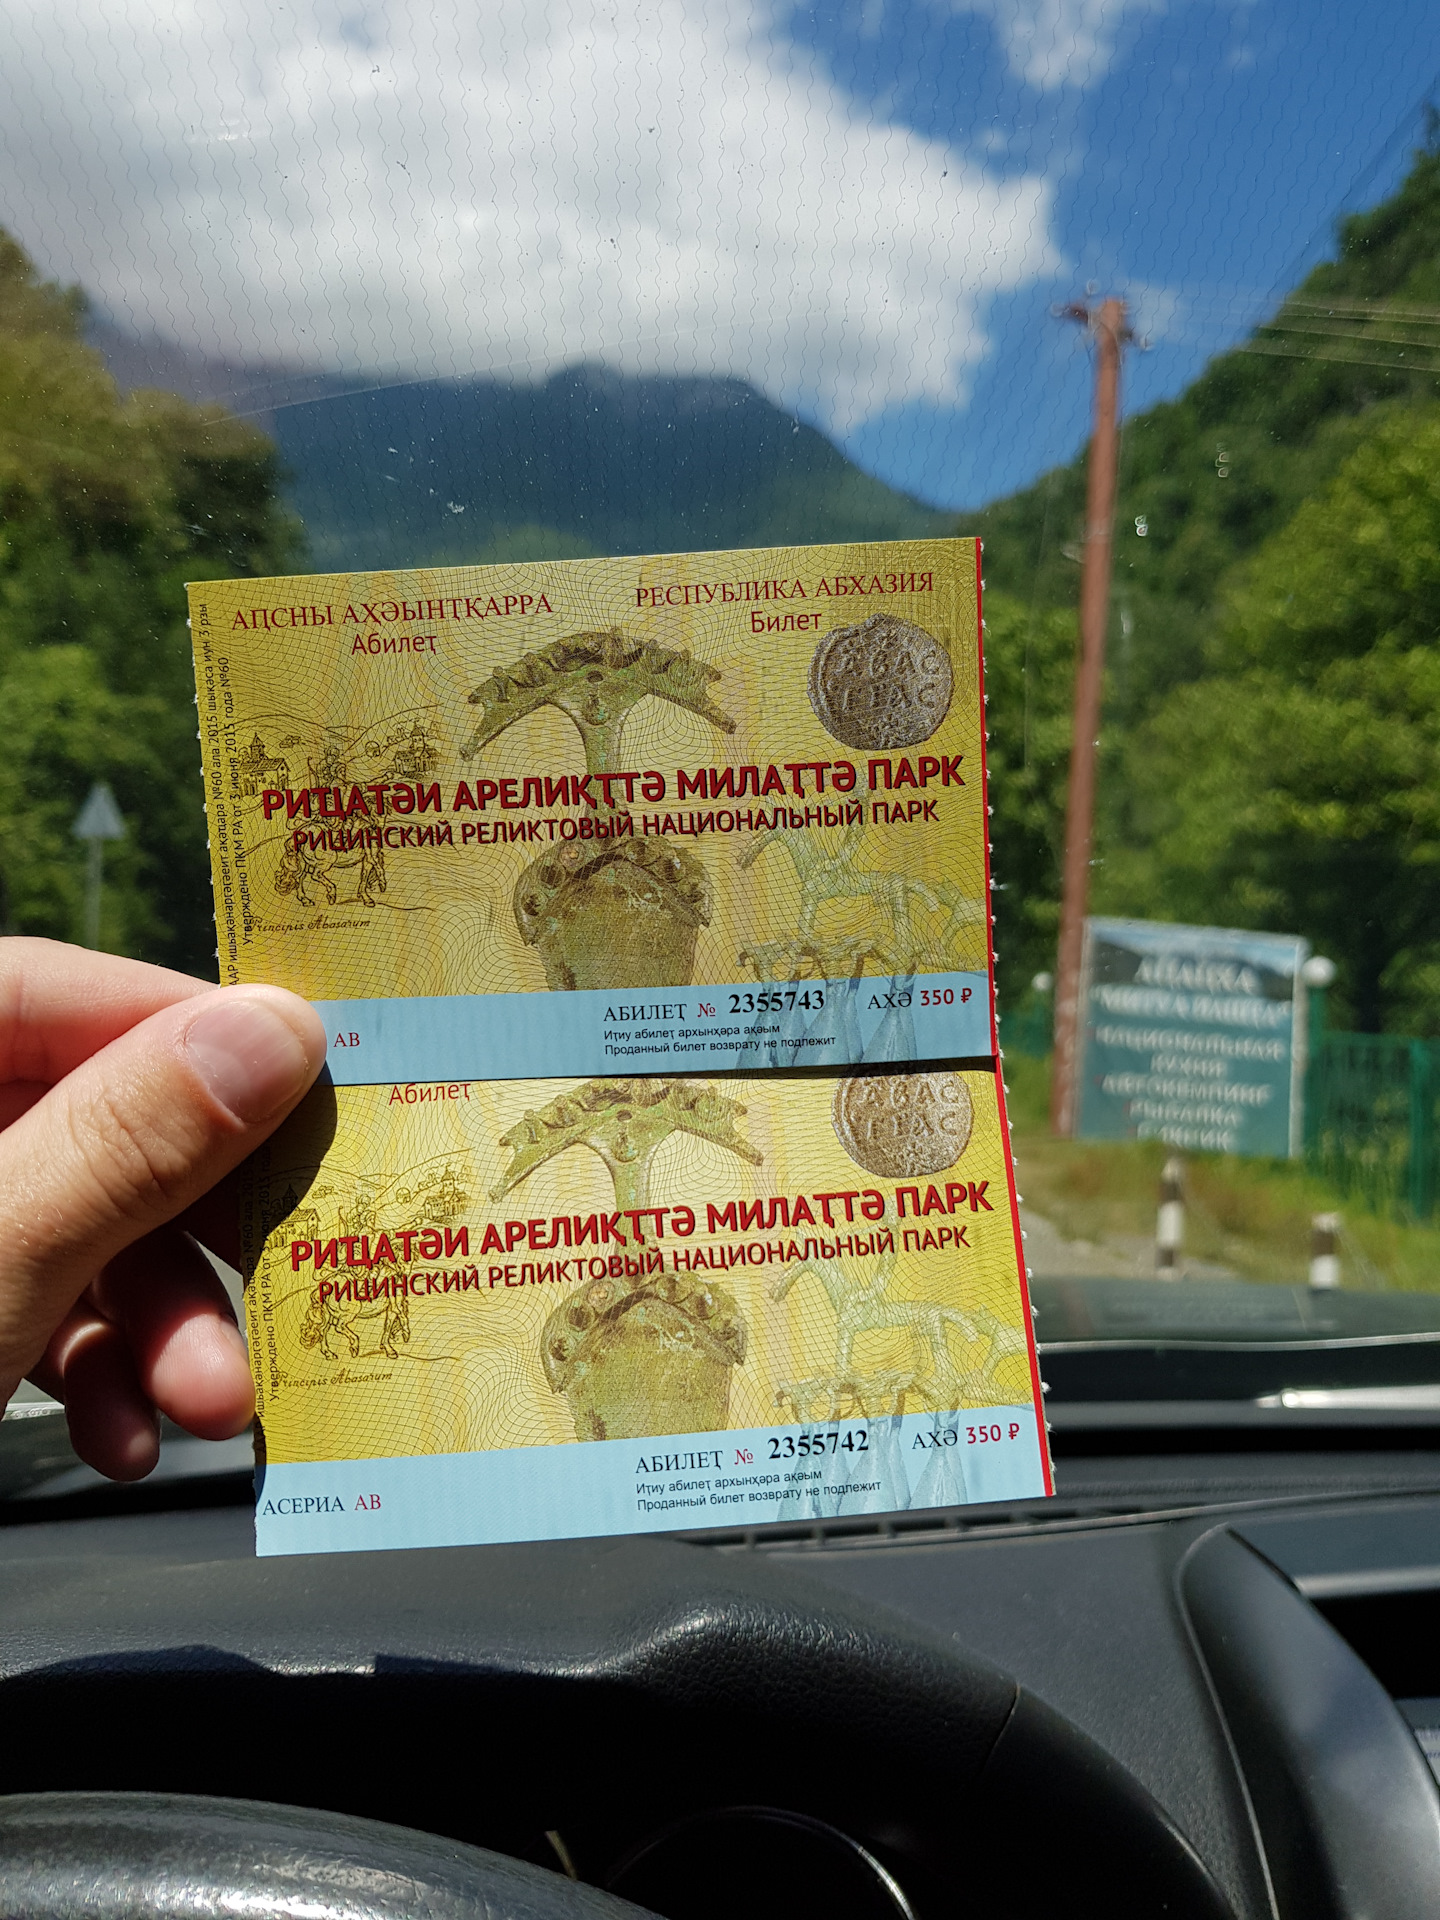 Абхазия билеты на самолет. Рицинский реликтовый национальный парк билет. Билеты в Абхазию.